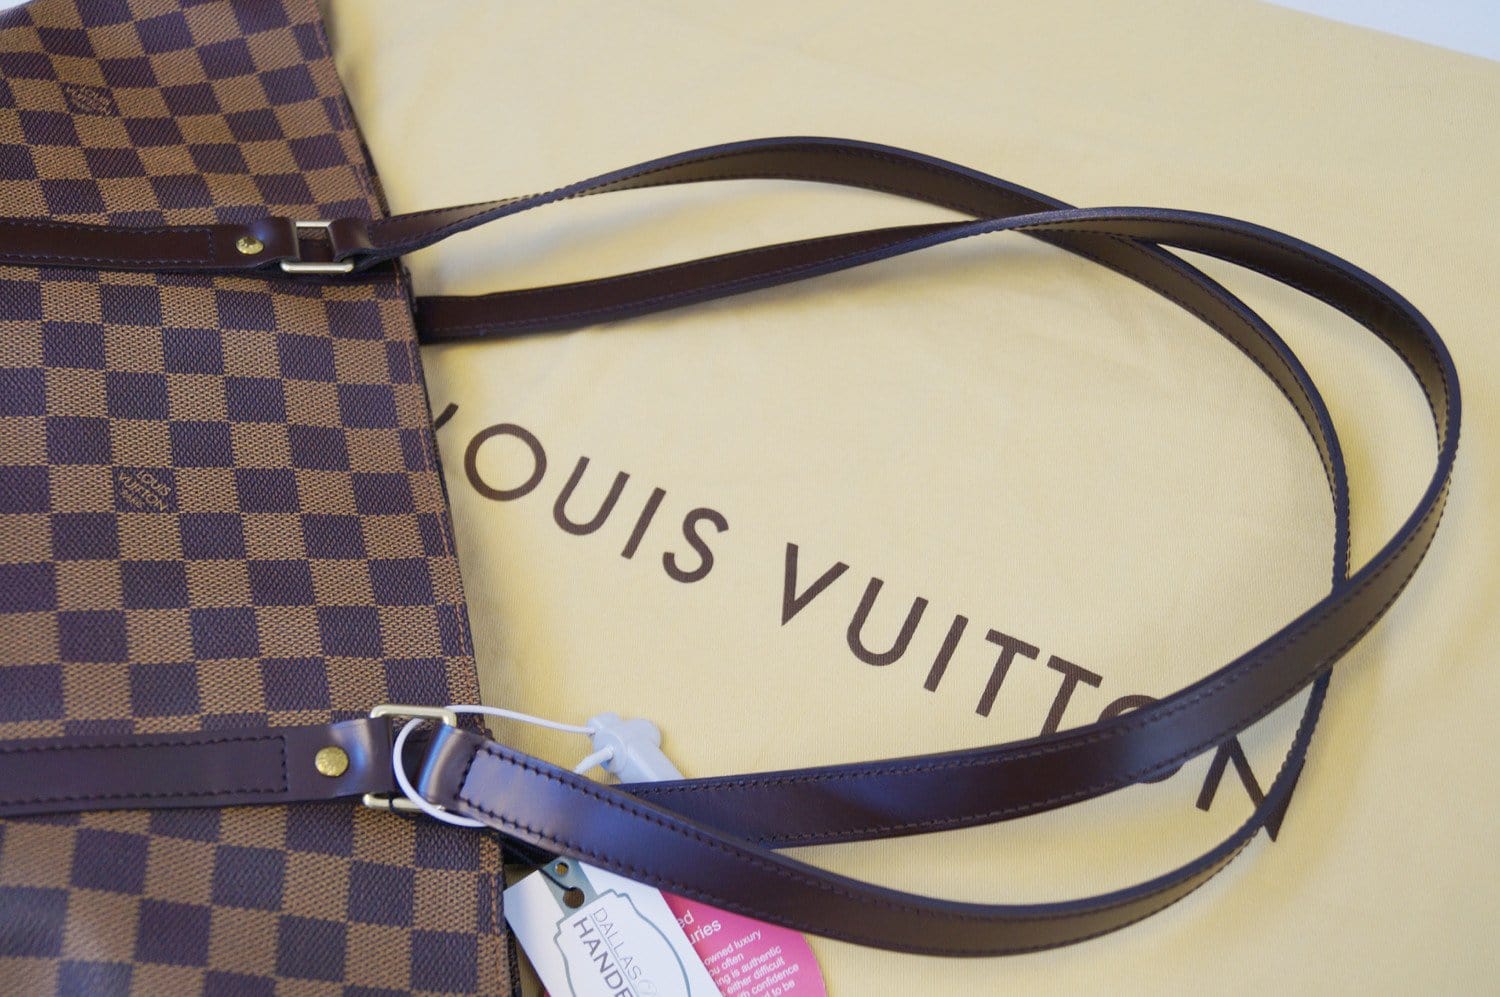 Teni Luis Vuitton disponible en @elchavosport con envío 🚚 a domicilio a  toda partes del #pais teléfono 📲 8495735500 WhatsApp 8496319940 #…